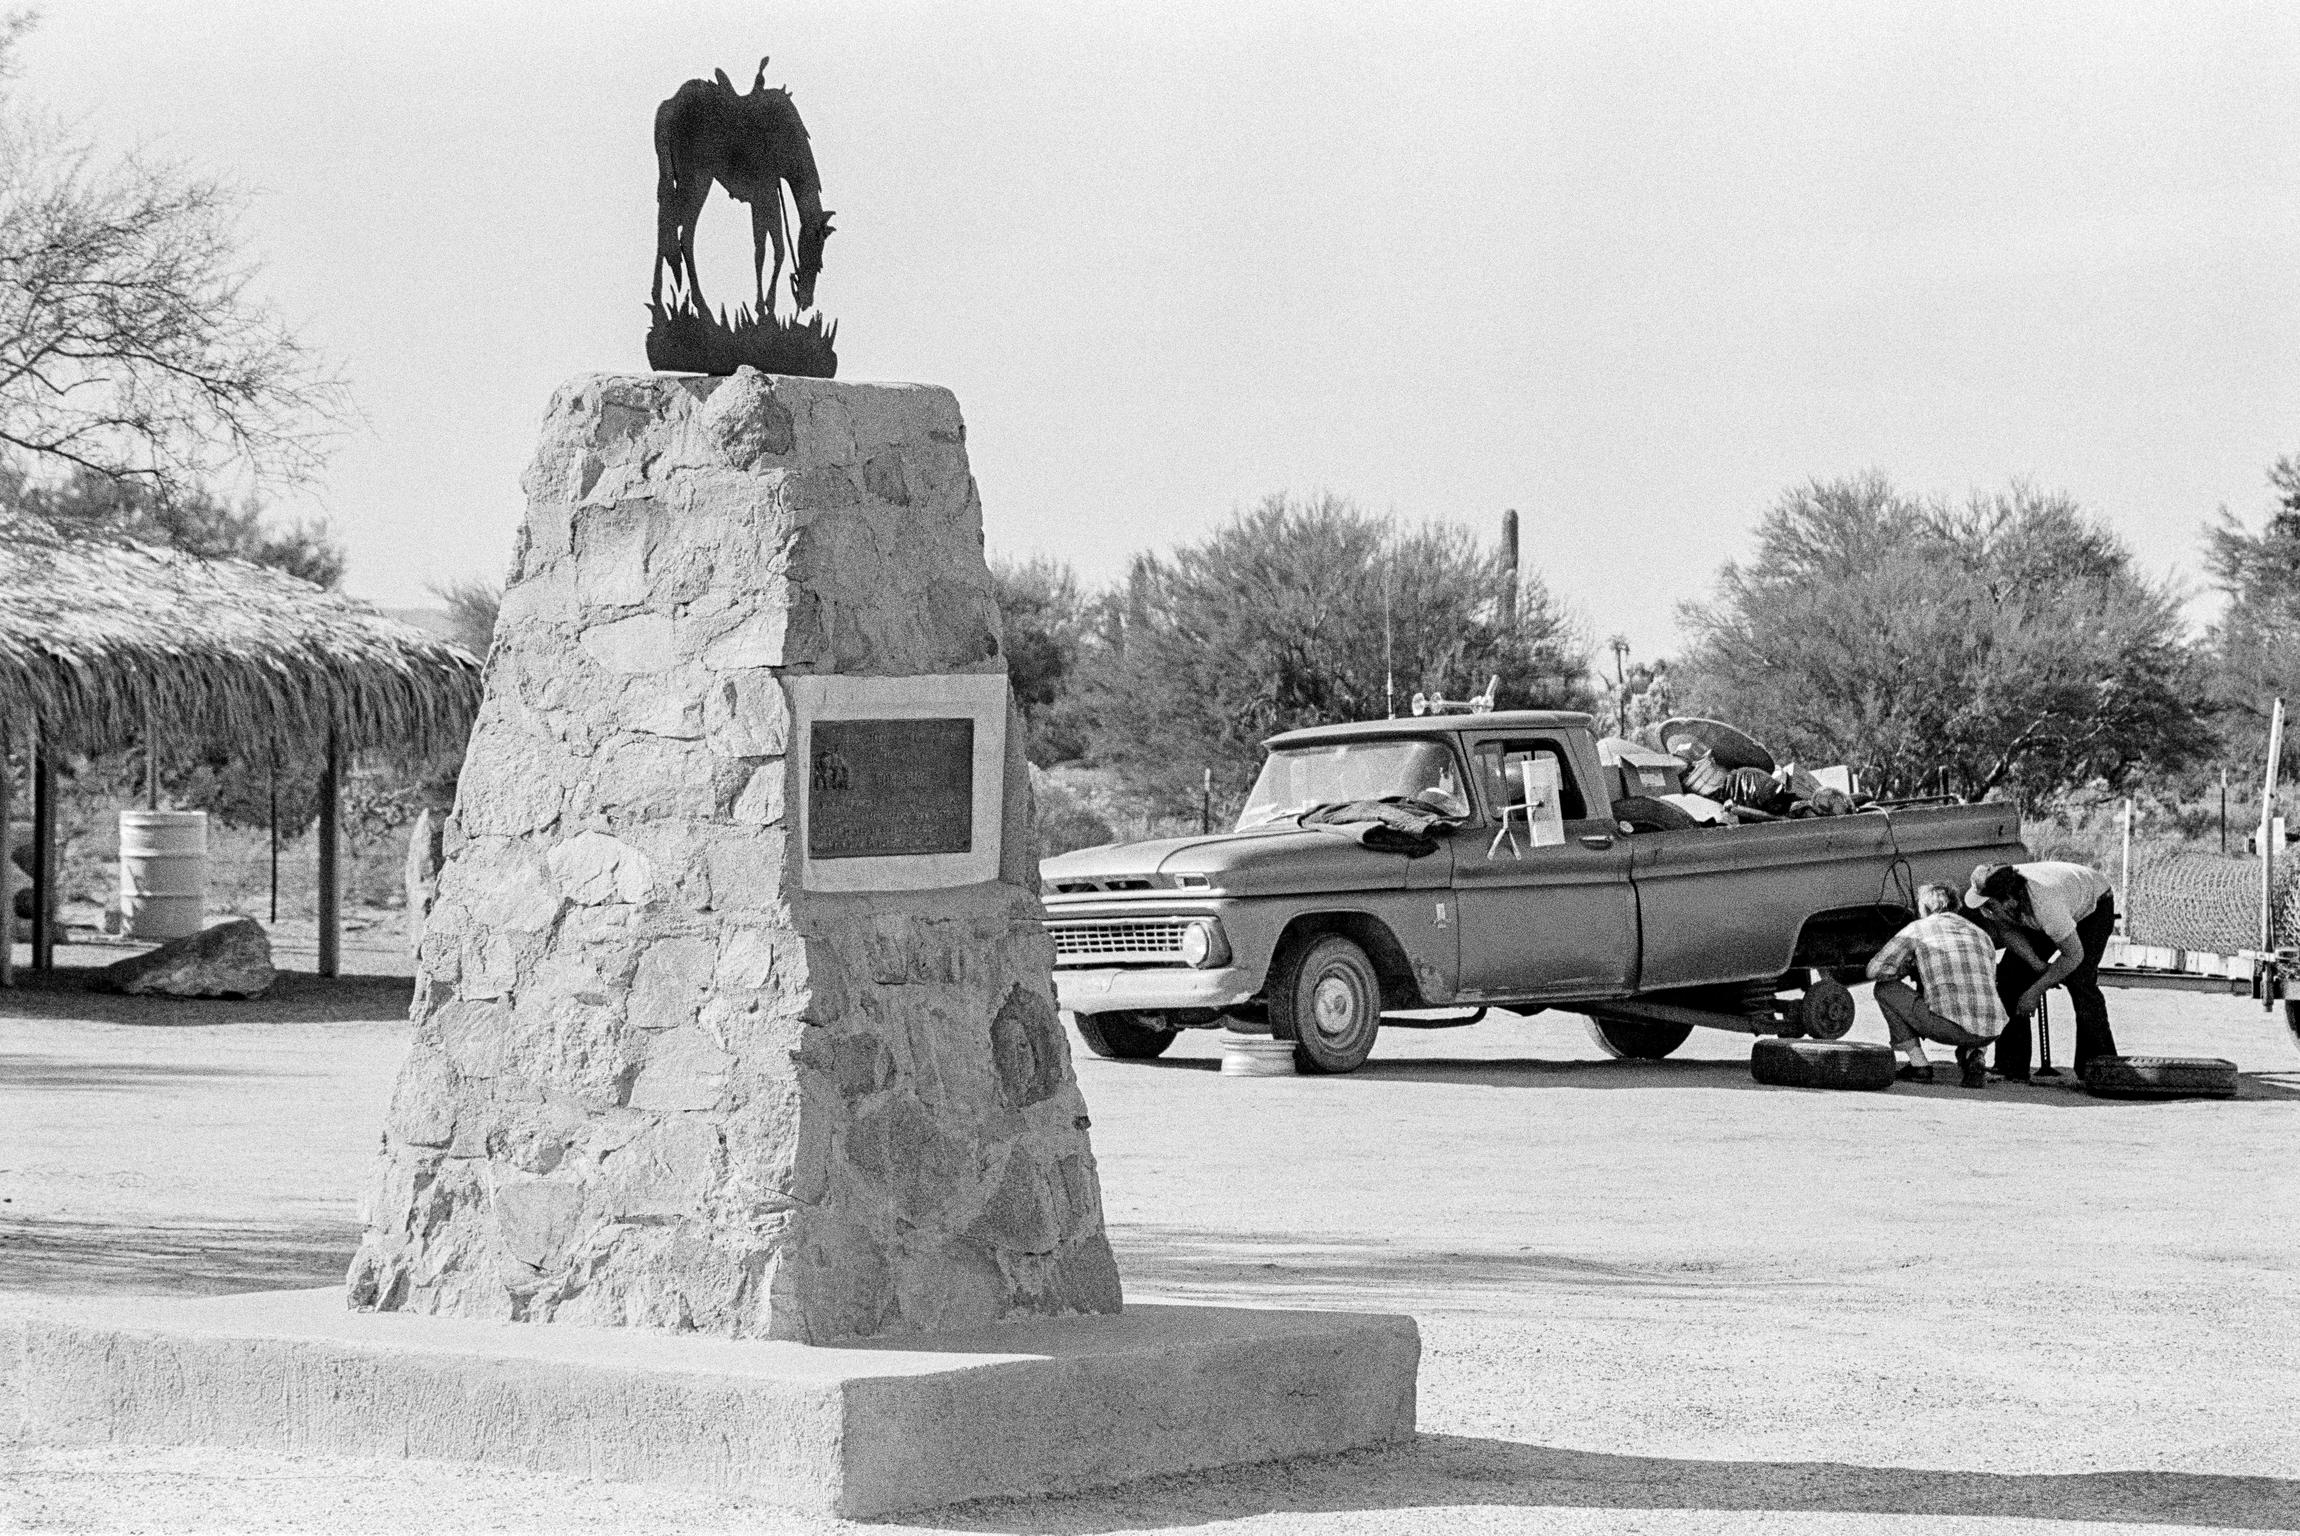 Tom Mix (cowboy movie star) memorial. Arizona USA